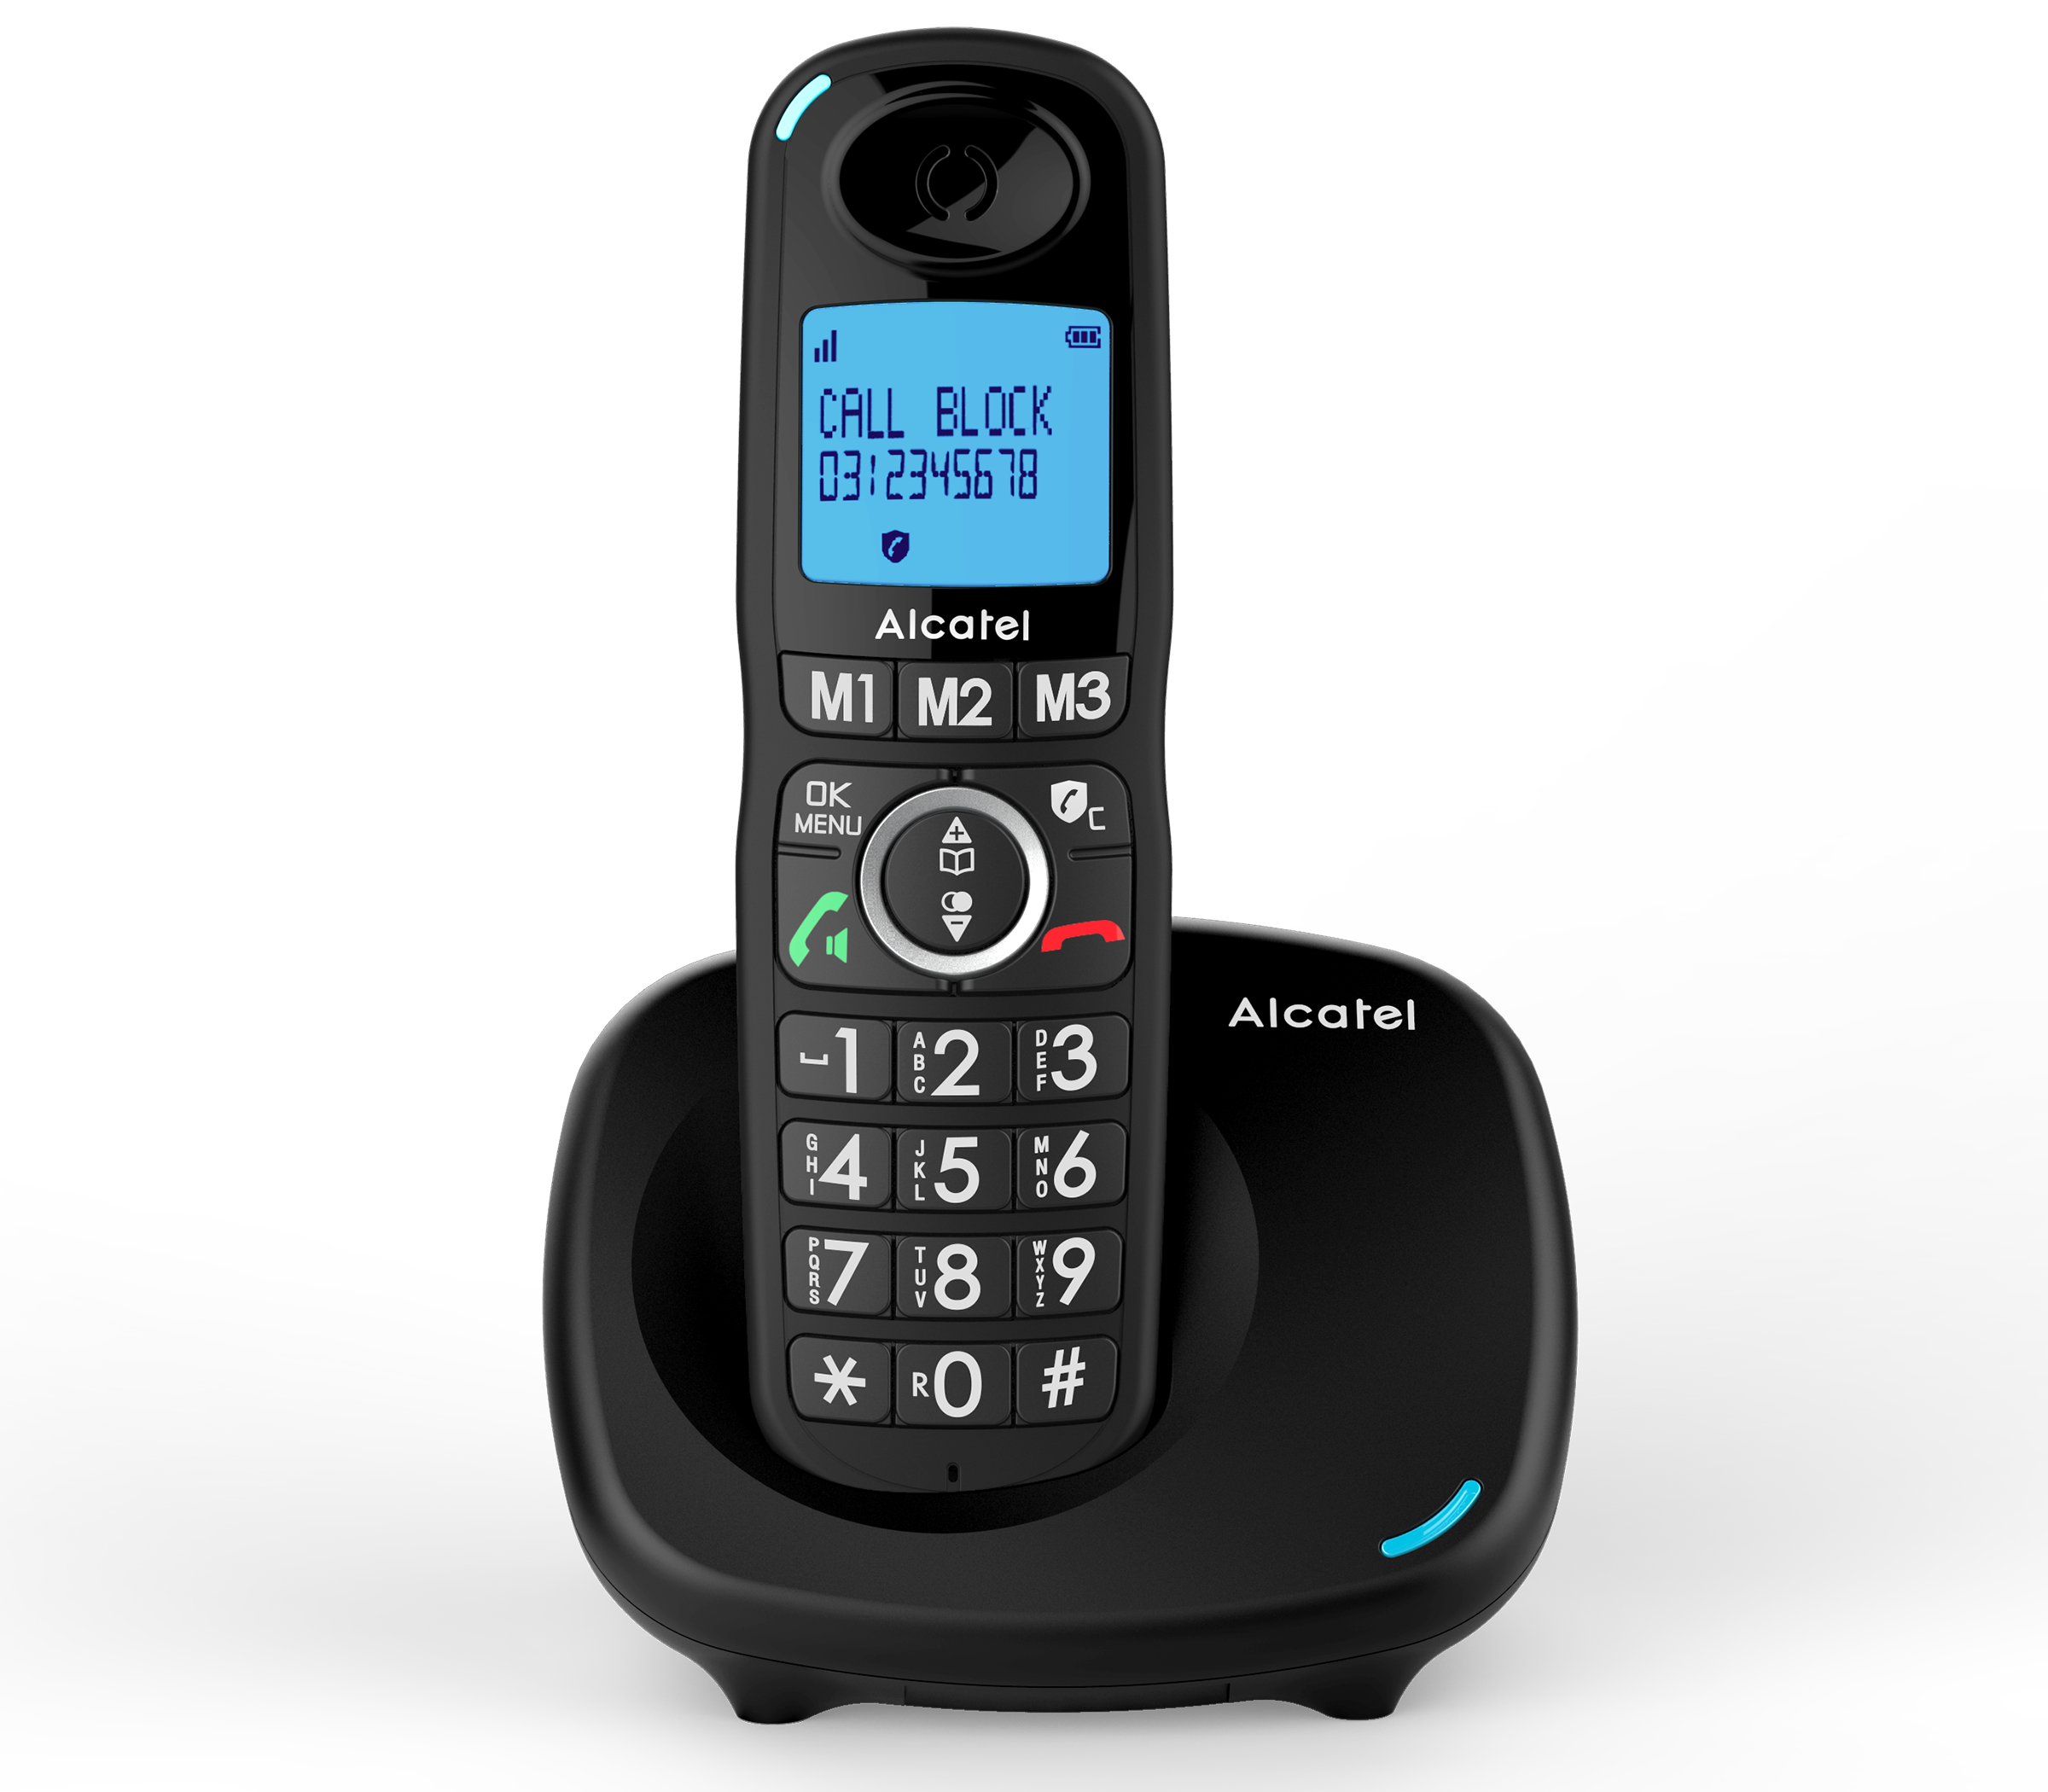 Teléfono fijo inalámbrico XL 585 Voice Duo Alcatel Garantía de 2 años